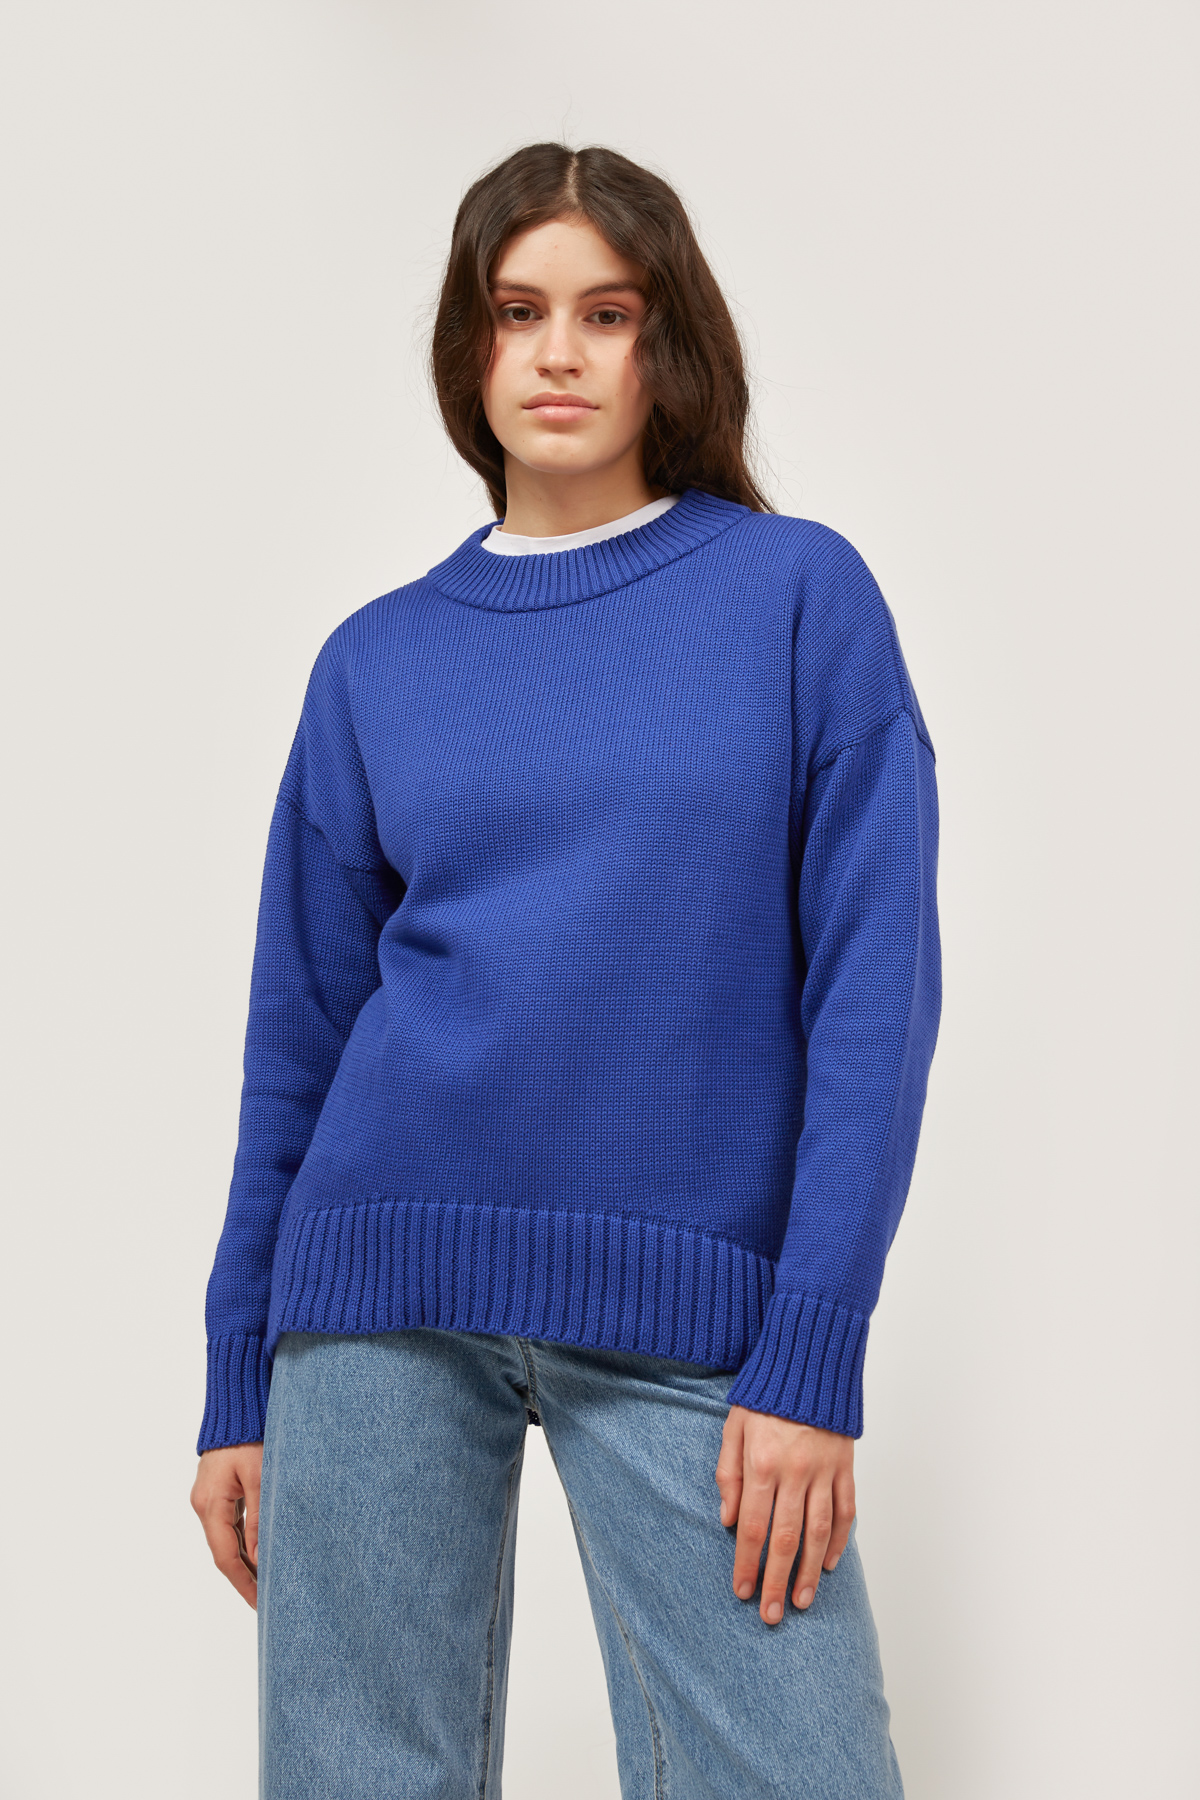 Хлопковый свитер цвета ультрамарин, фото 1